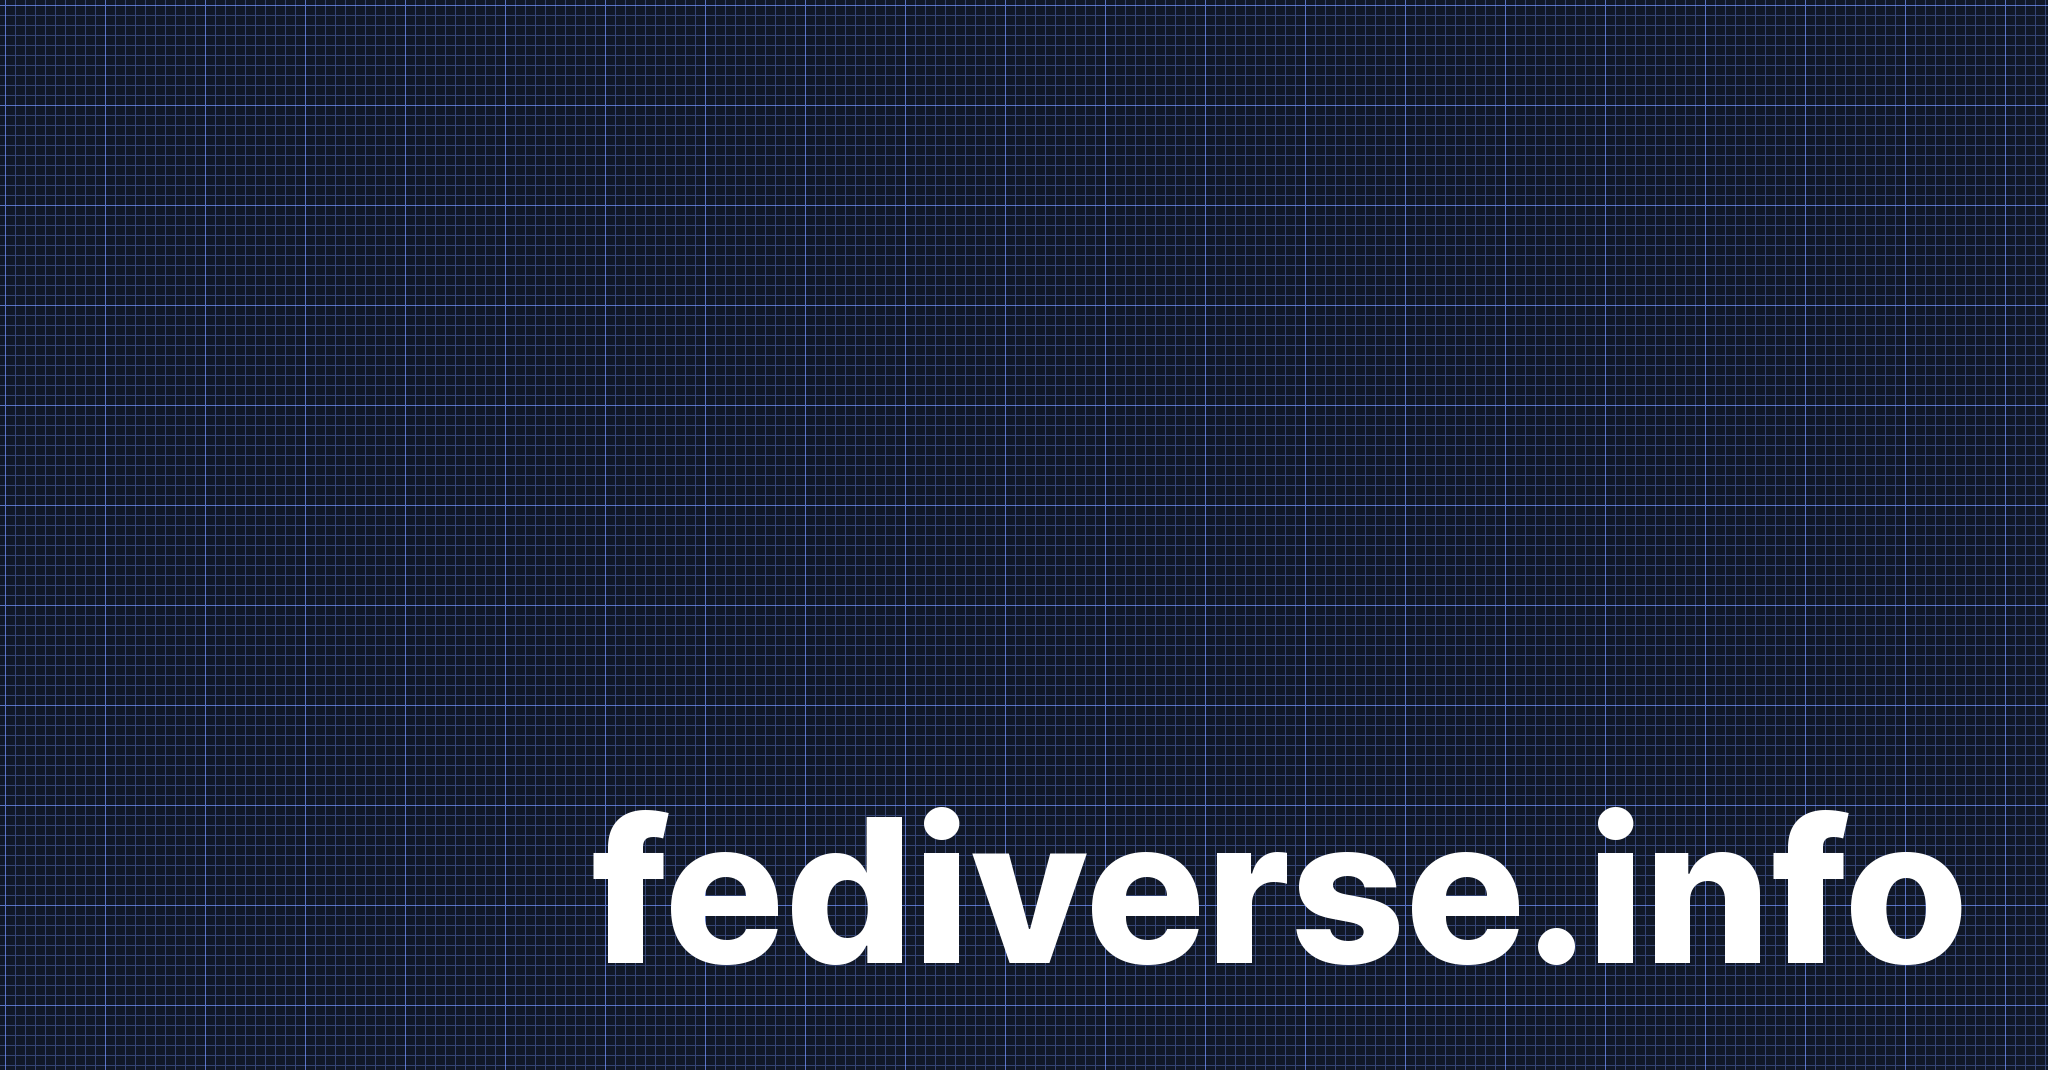 fediverse.info